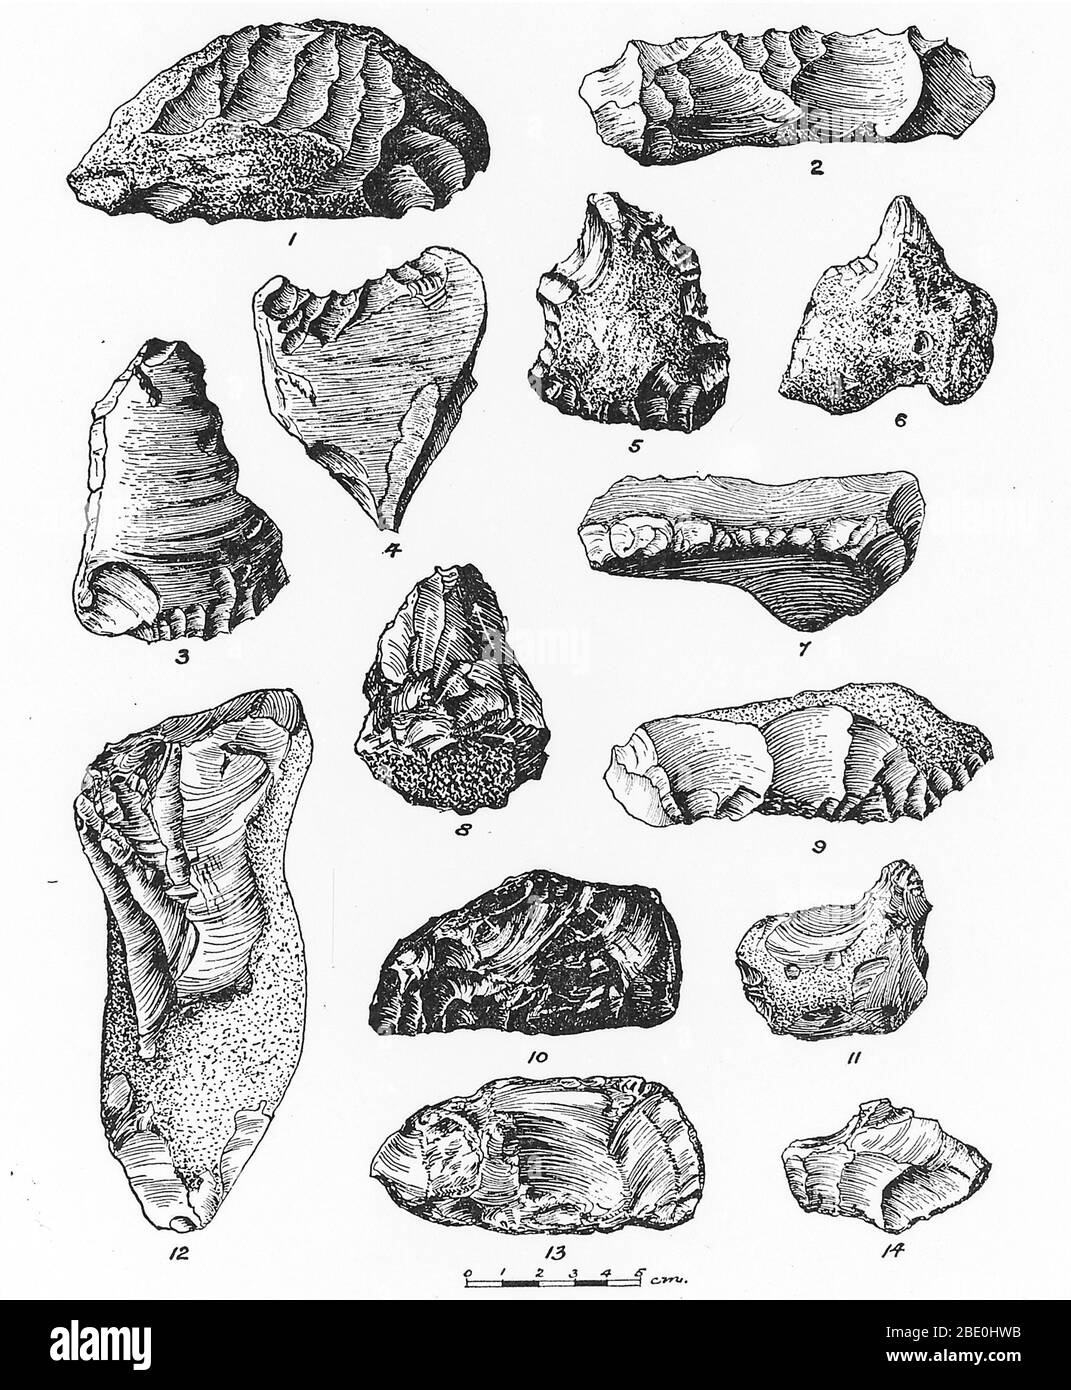 Eoliti da Francia, Belgio e Inghilterra. Un eolith è un nodulo a pietra  focaia scheggiato. Gli Eoliti erano stati considerati come manufatti, i  primi strumenti in pietra, ma ora si ritiene che